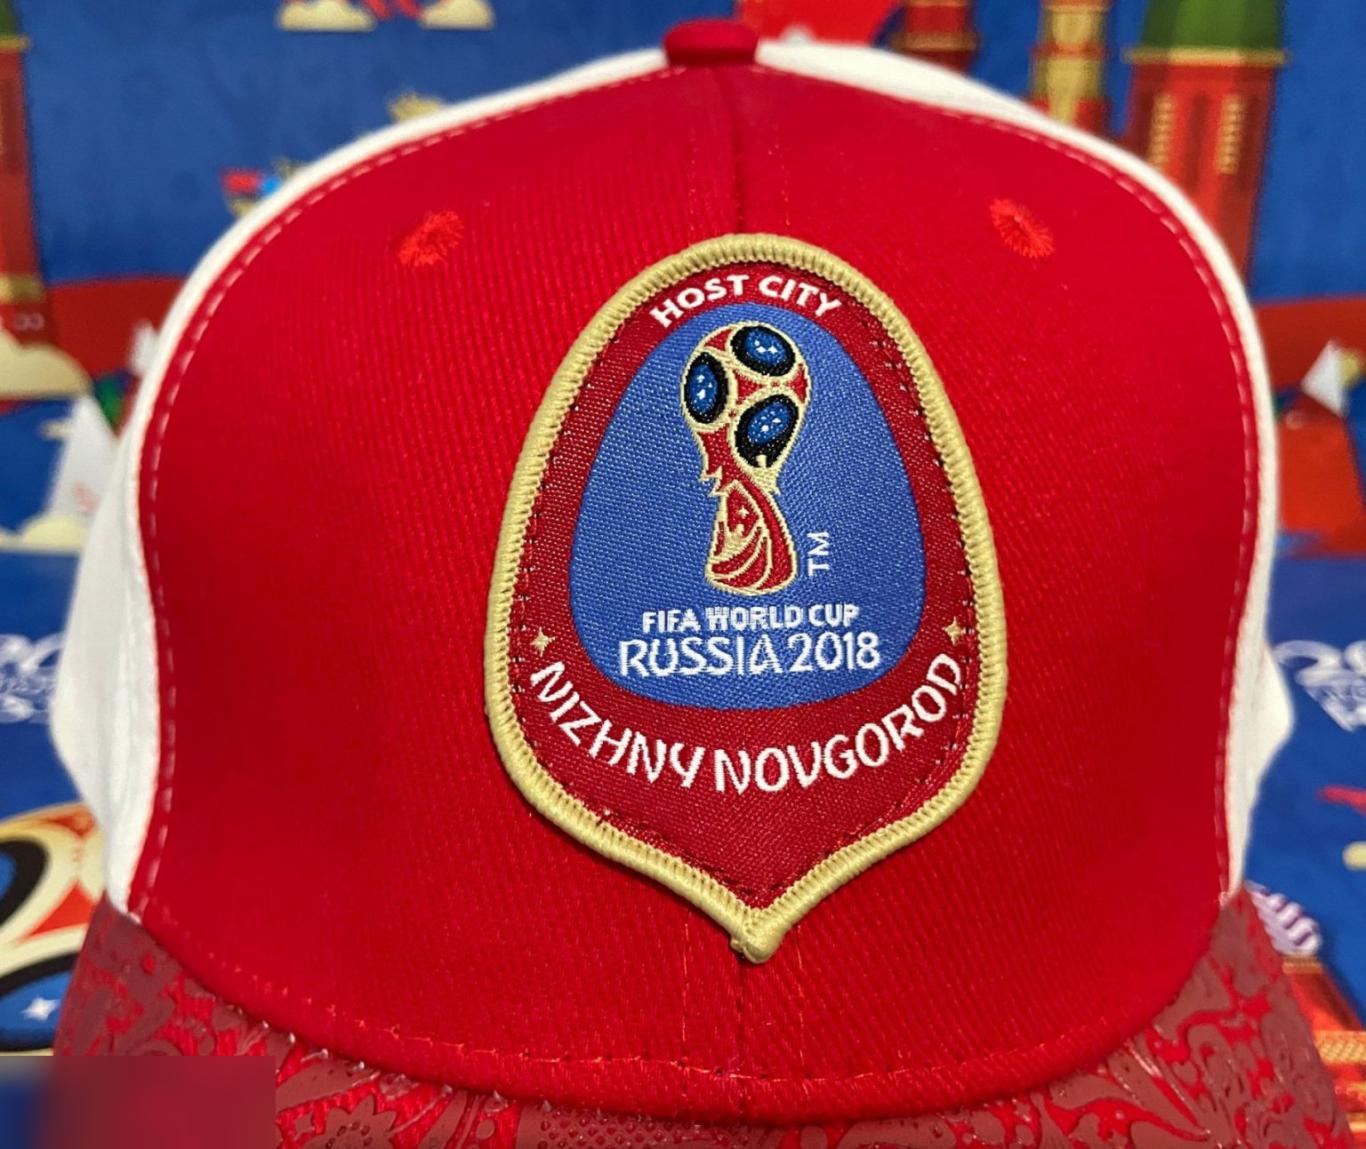 ОПТОВЫЙ ЛОТ! 4 эксклюзивные кепки Организатора Чемпионата мира Fifa 2018 4